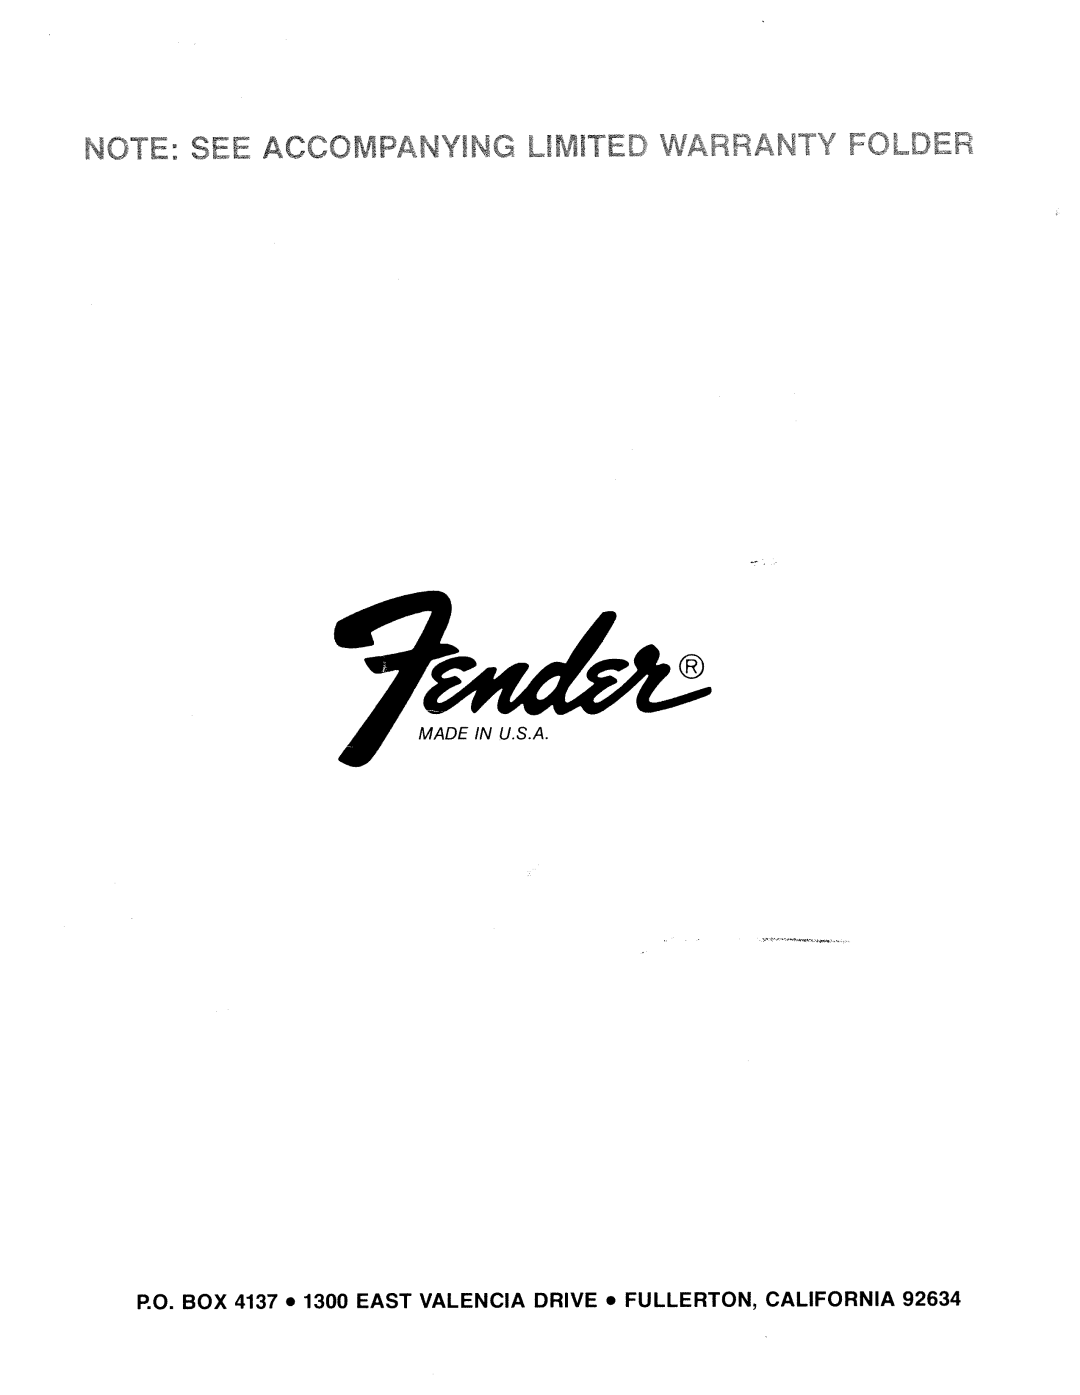 Fender SRA 200 manual 